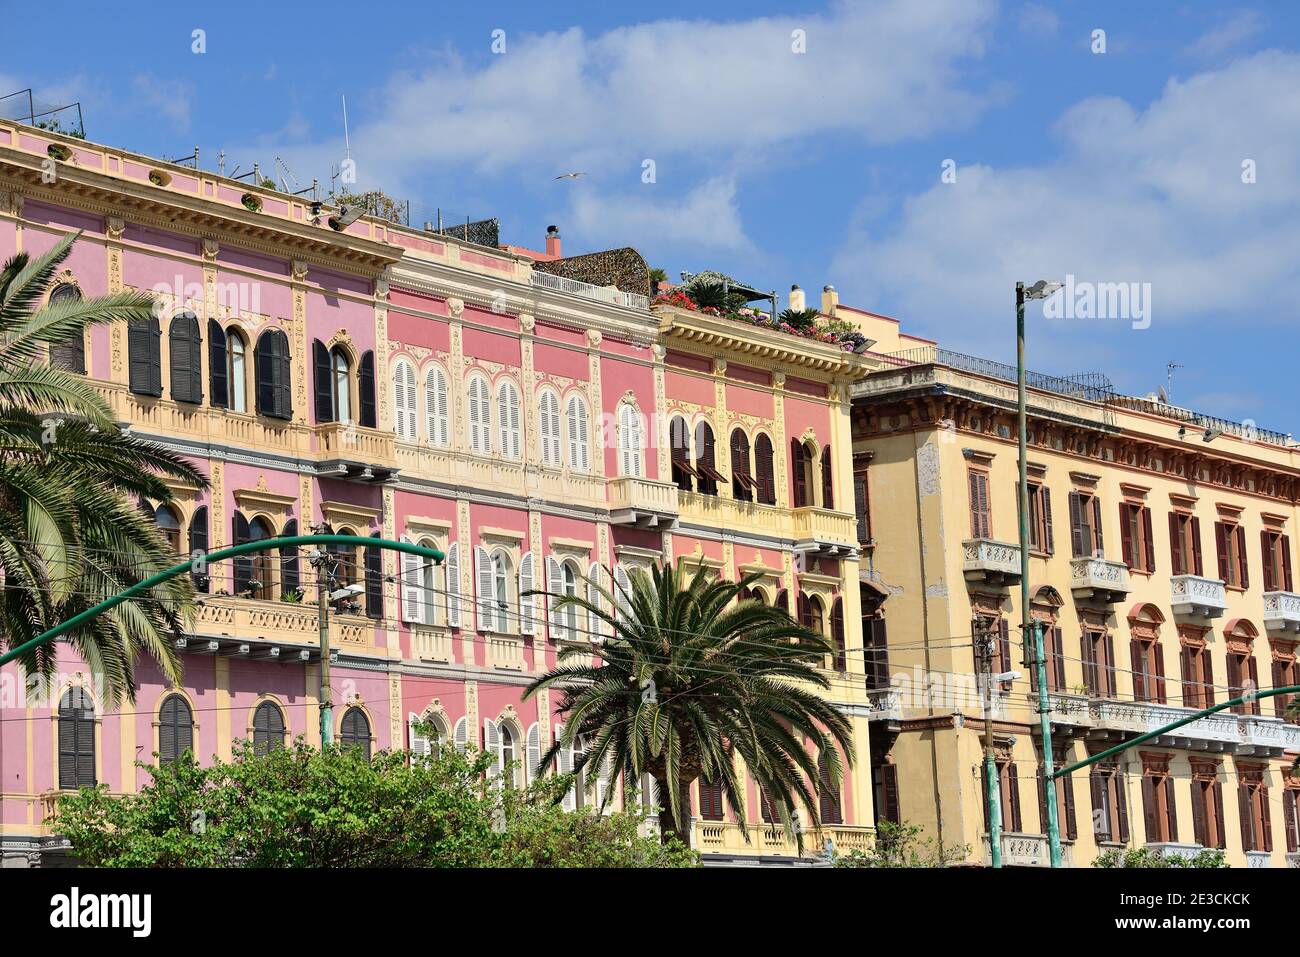 Italie, Sardaigne, Cagliari: Bâtiments typiques colorés le long du front de mer Banque D'Images